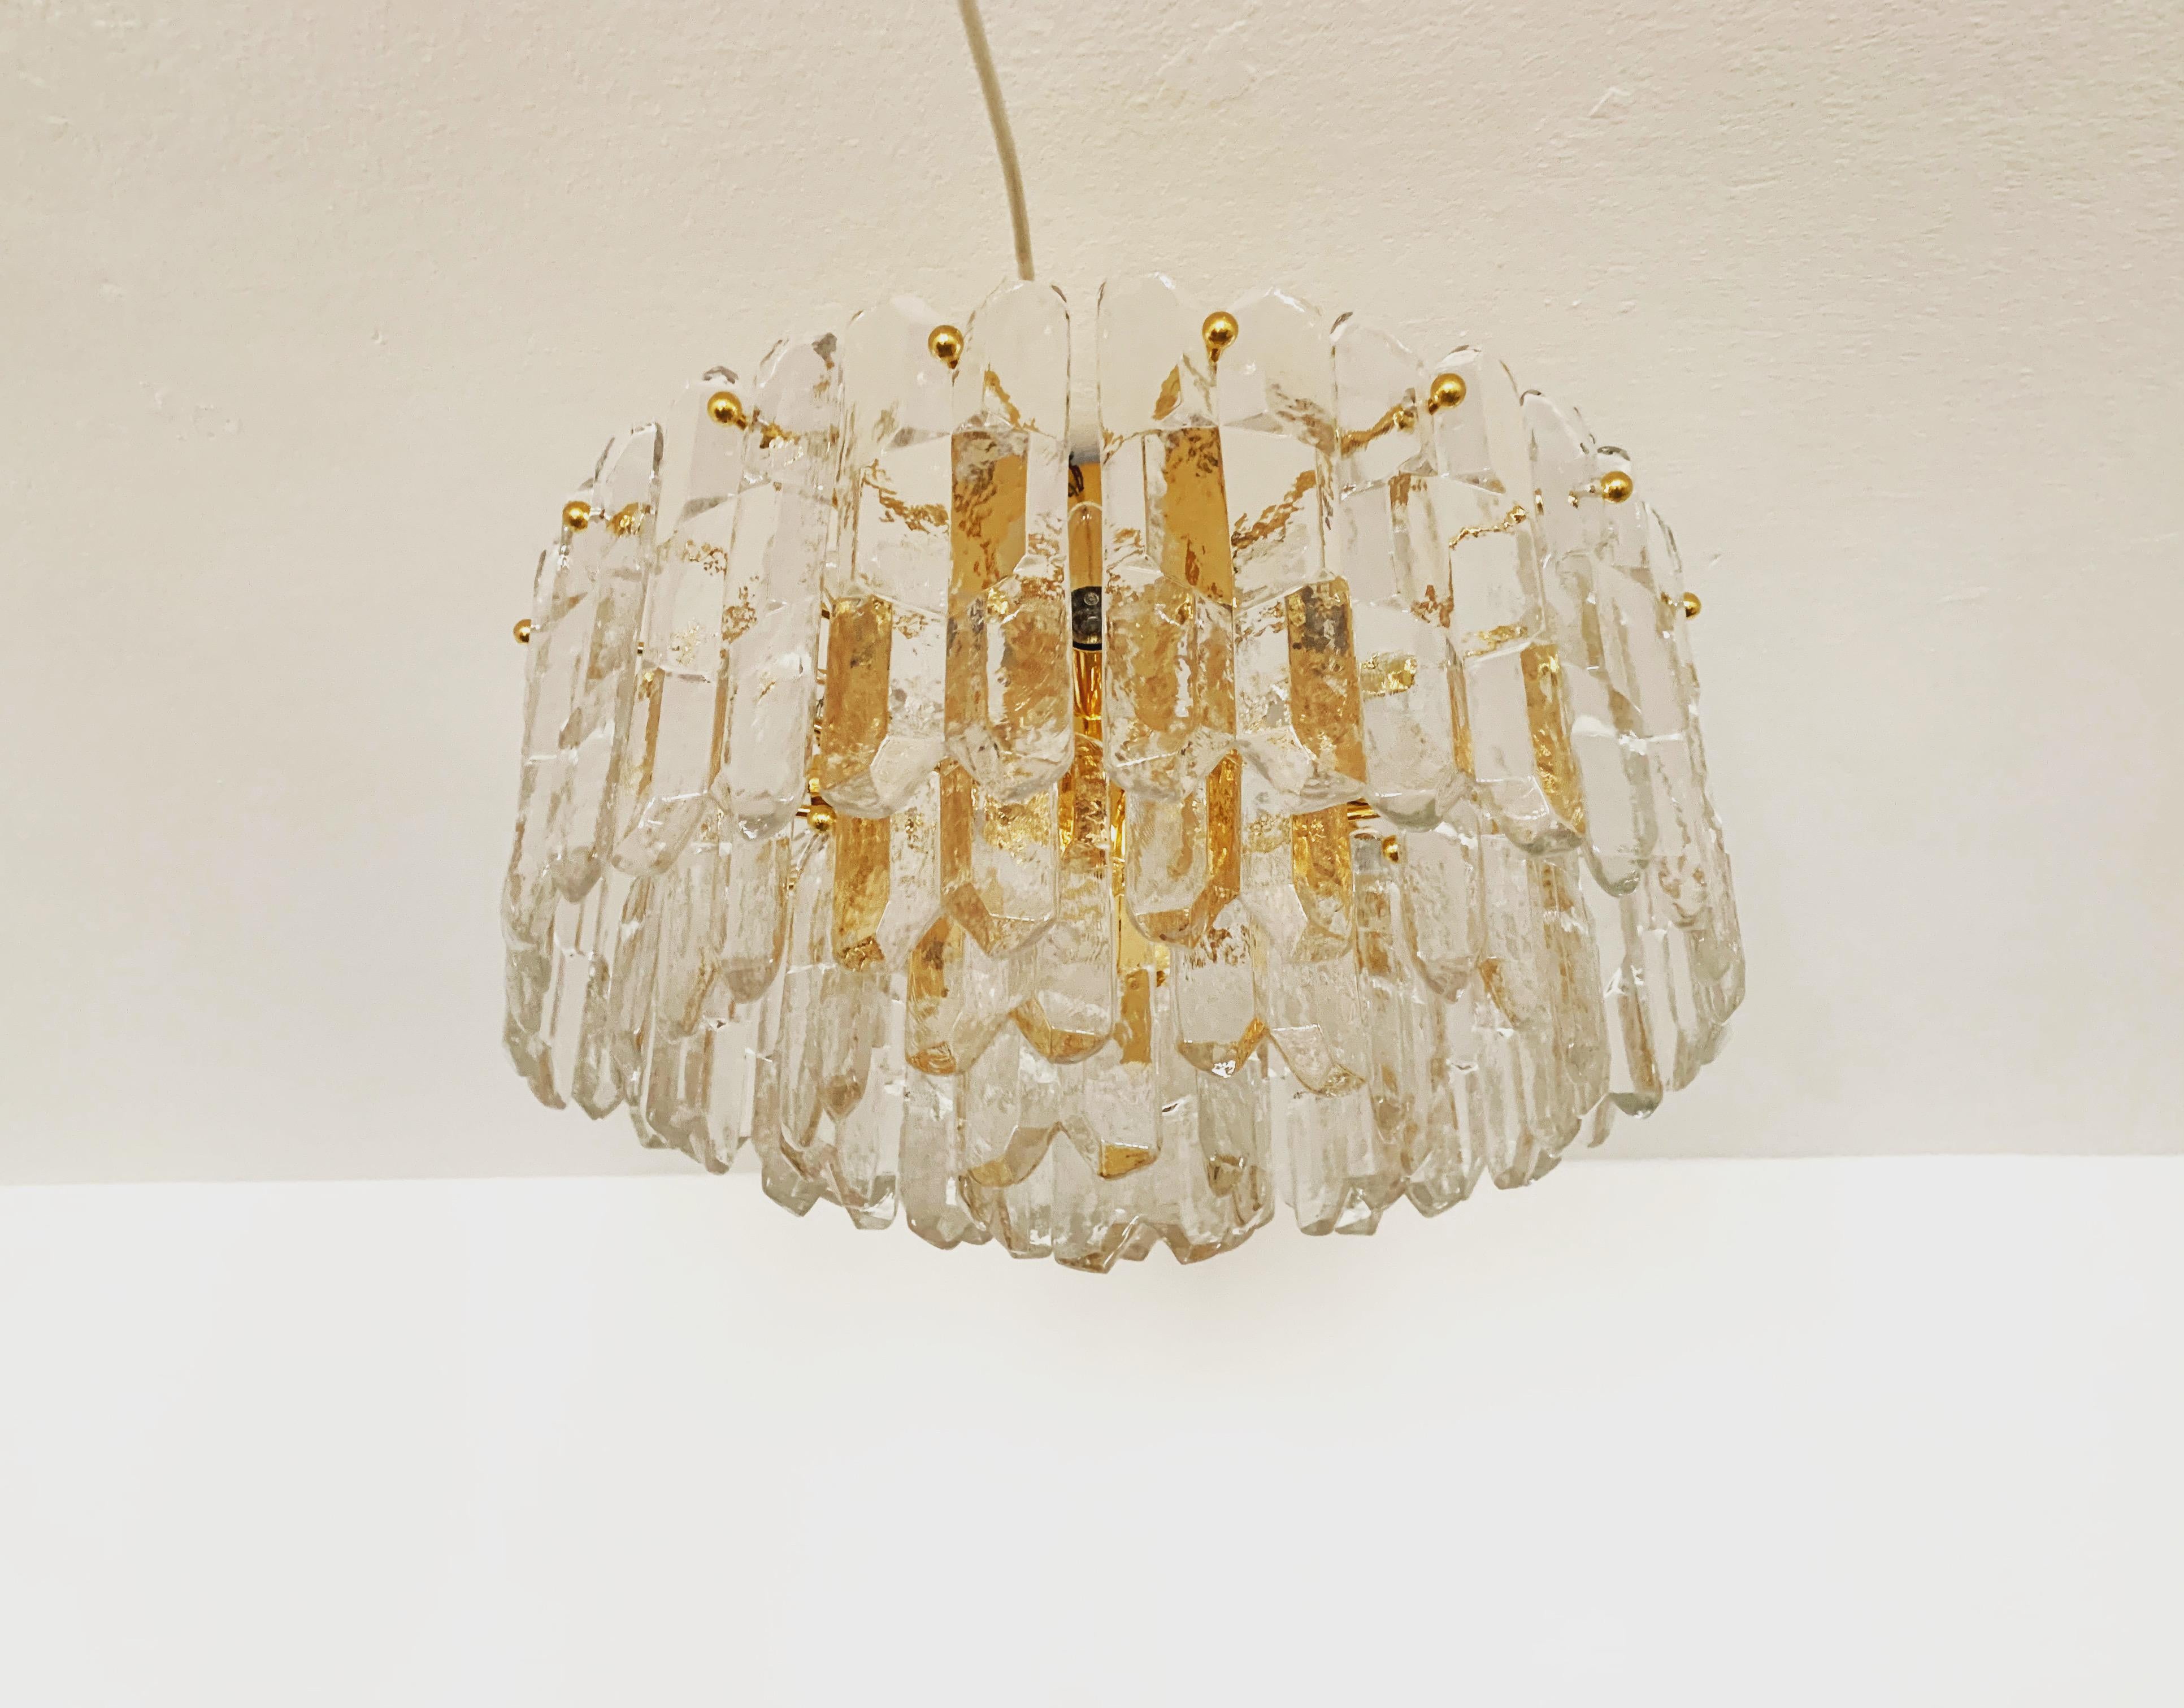 Wunderschöne und große Deckenlampe aus Eisglas aus den 1960er Jahren.
Die 42 formschönen Murano-Glaselemente erzeugen ein eindrucksvolles, funkelndes Lichtspiel.
Außergewöhnlich hochwertige Verarbeitung.
Sehr edles und luxuriöses Aussehen und ein